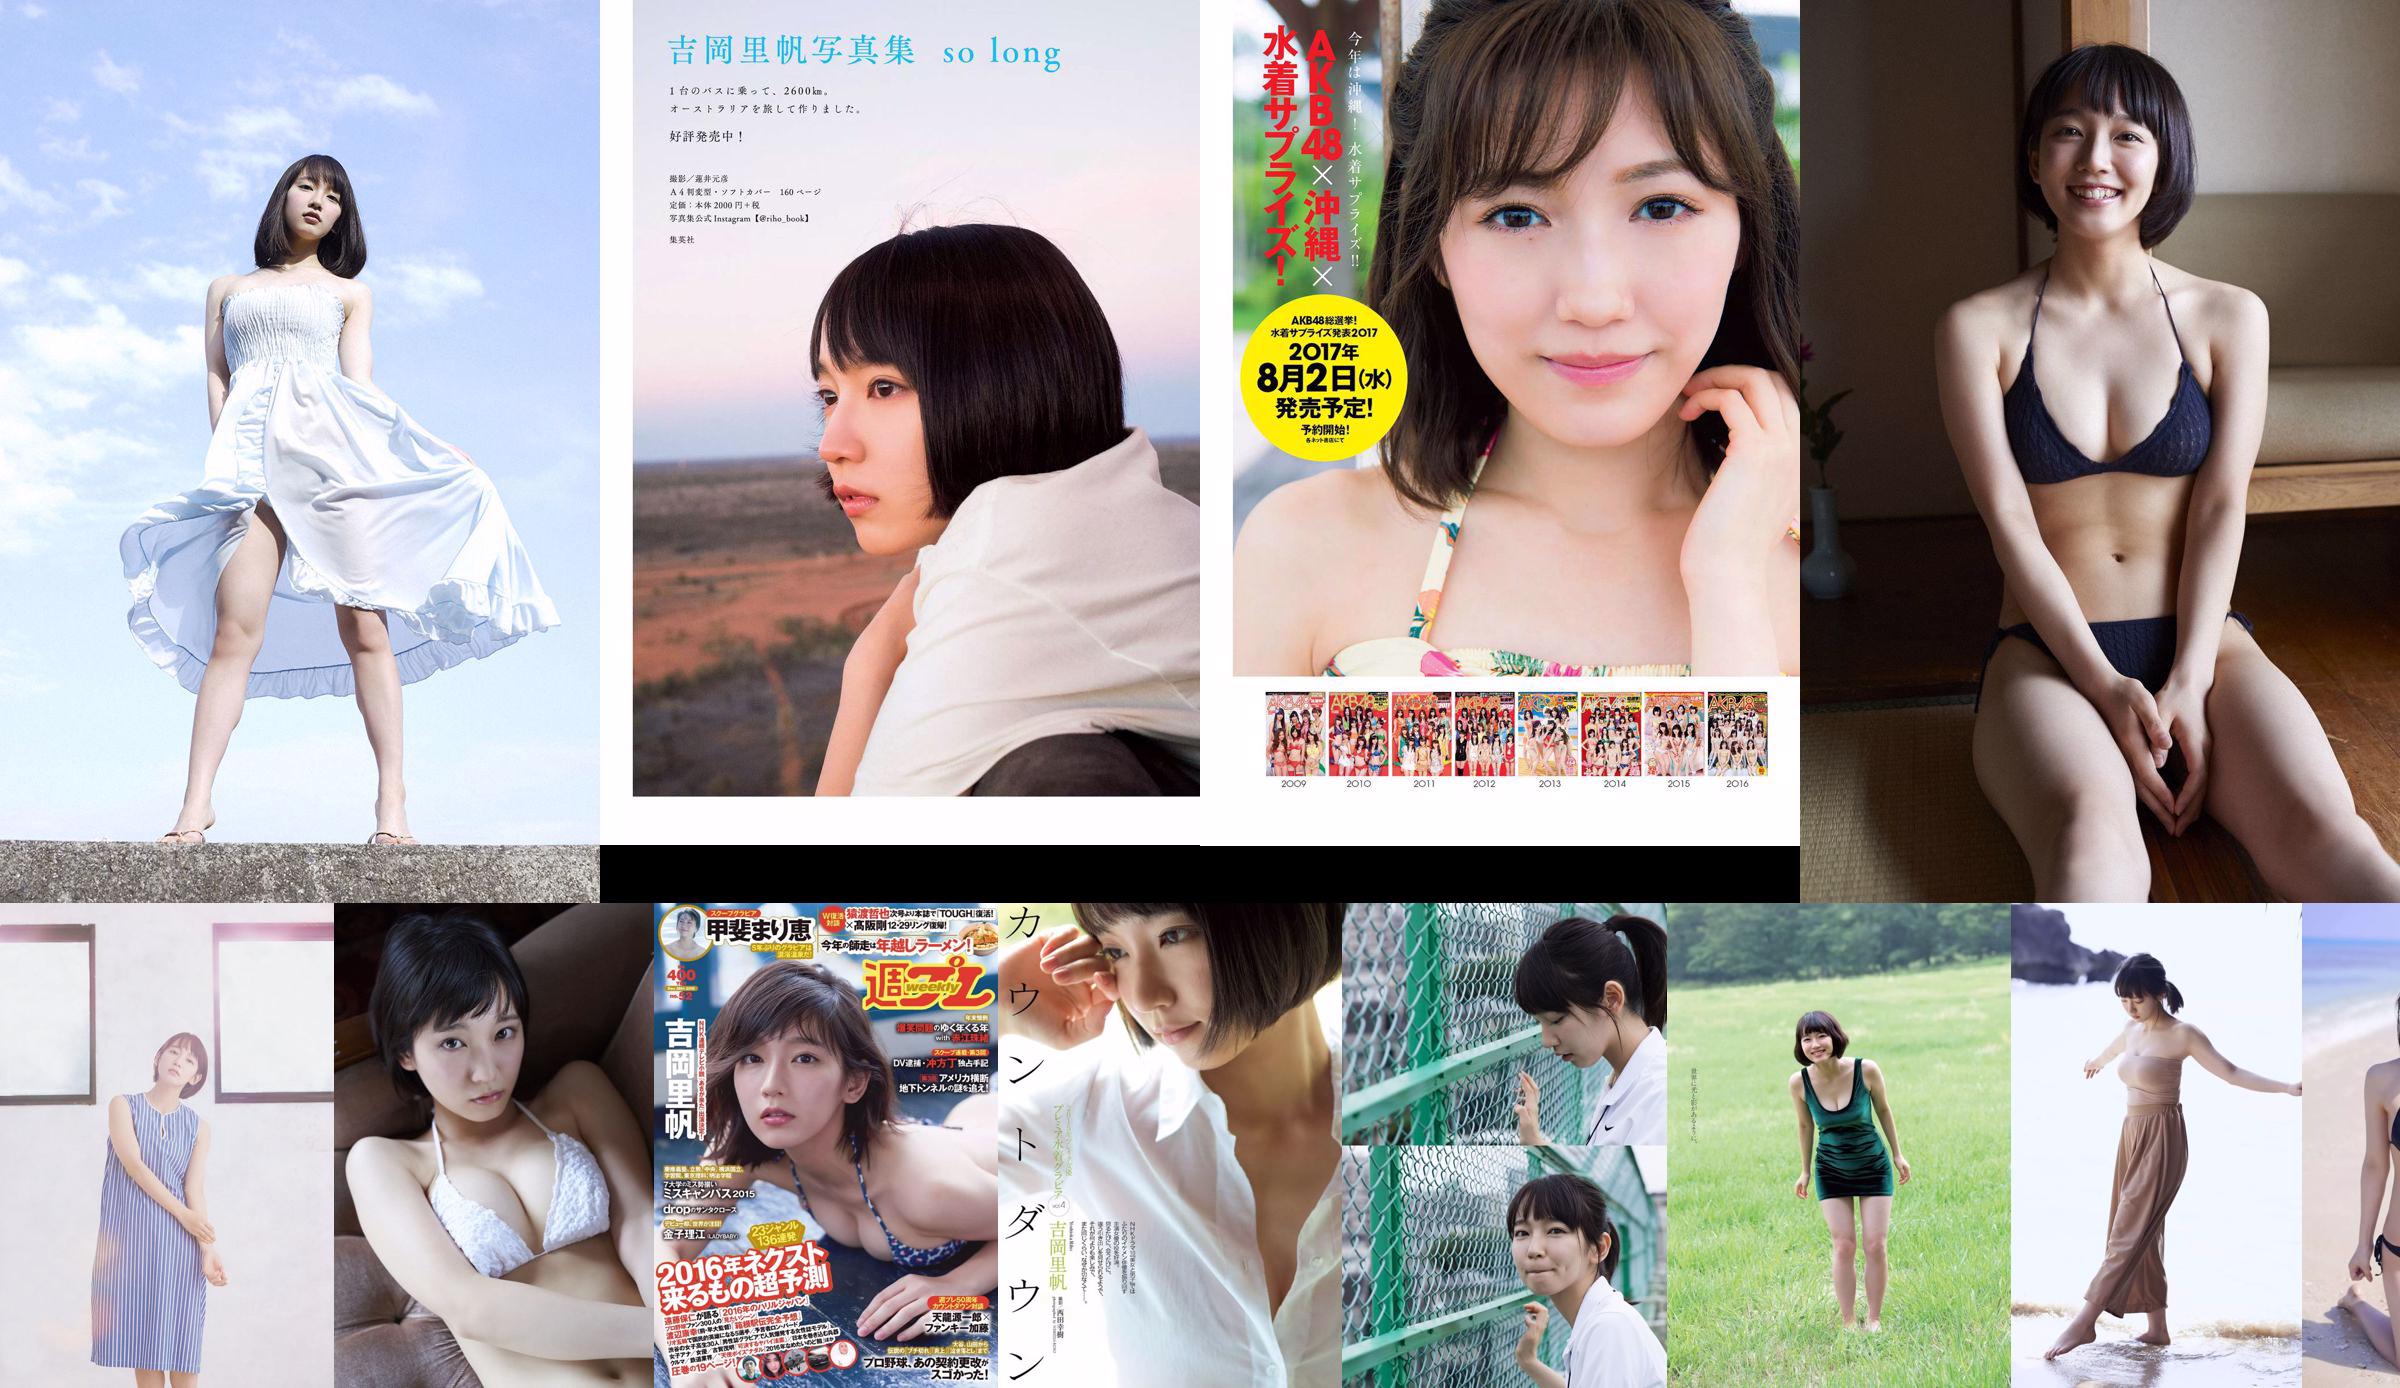 [Bomb.TV] October 2014 issue Riho Yoshioka Riho Yoshioka / Riho Yoshioka No.ae5d4e Page 9